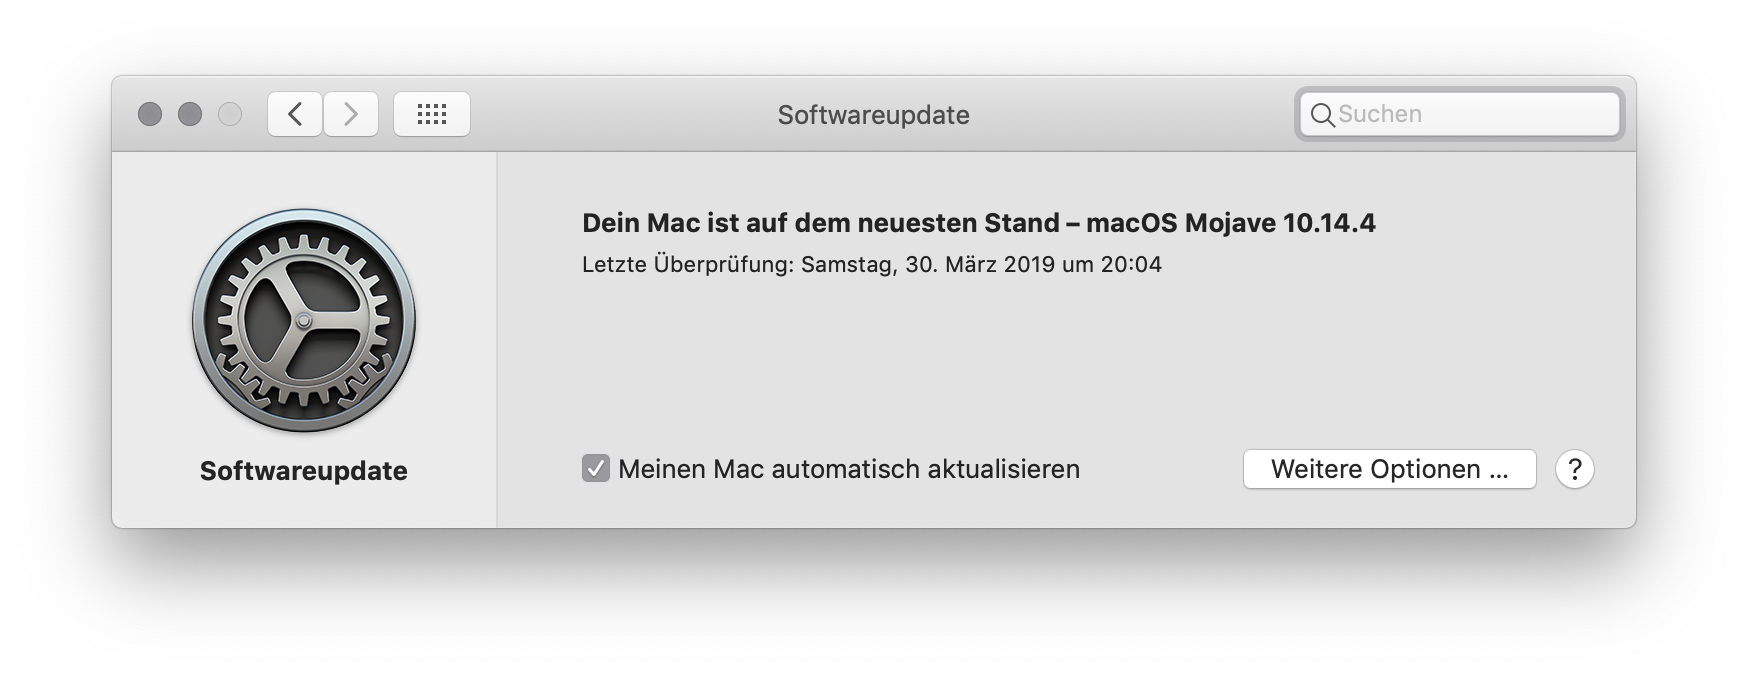 Updates für das System und Apps unter macOS einstellen Meinen Mac automatisch aktualisieren